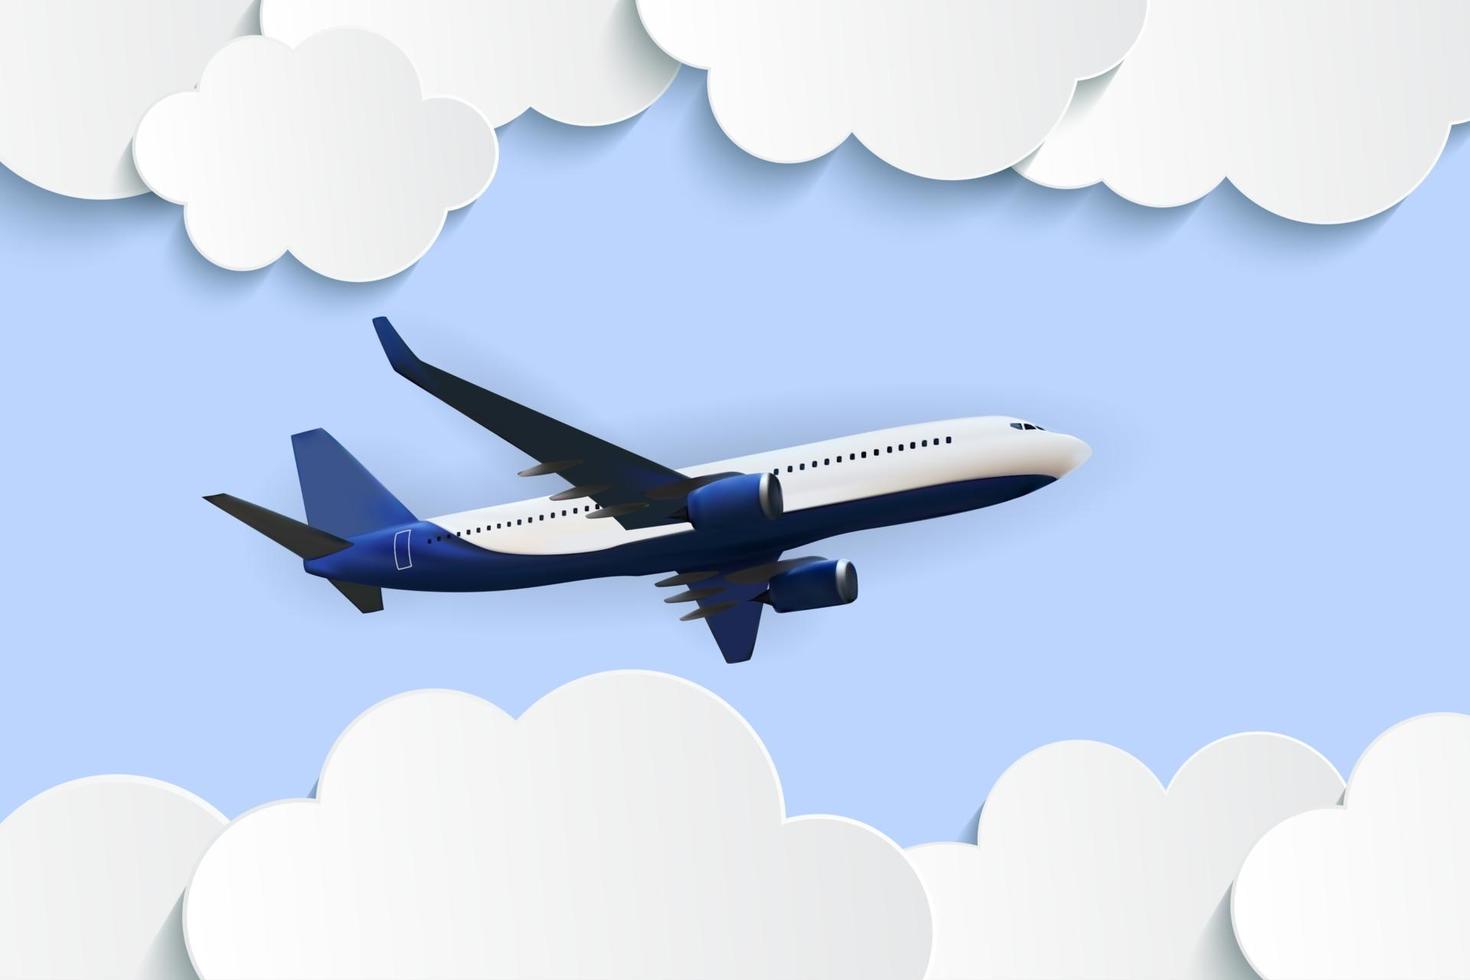 abstrakta moln med flygande realistisk flygplanvektorillustration 3d vektor